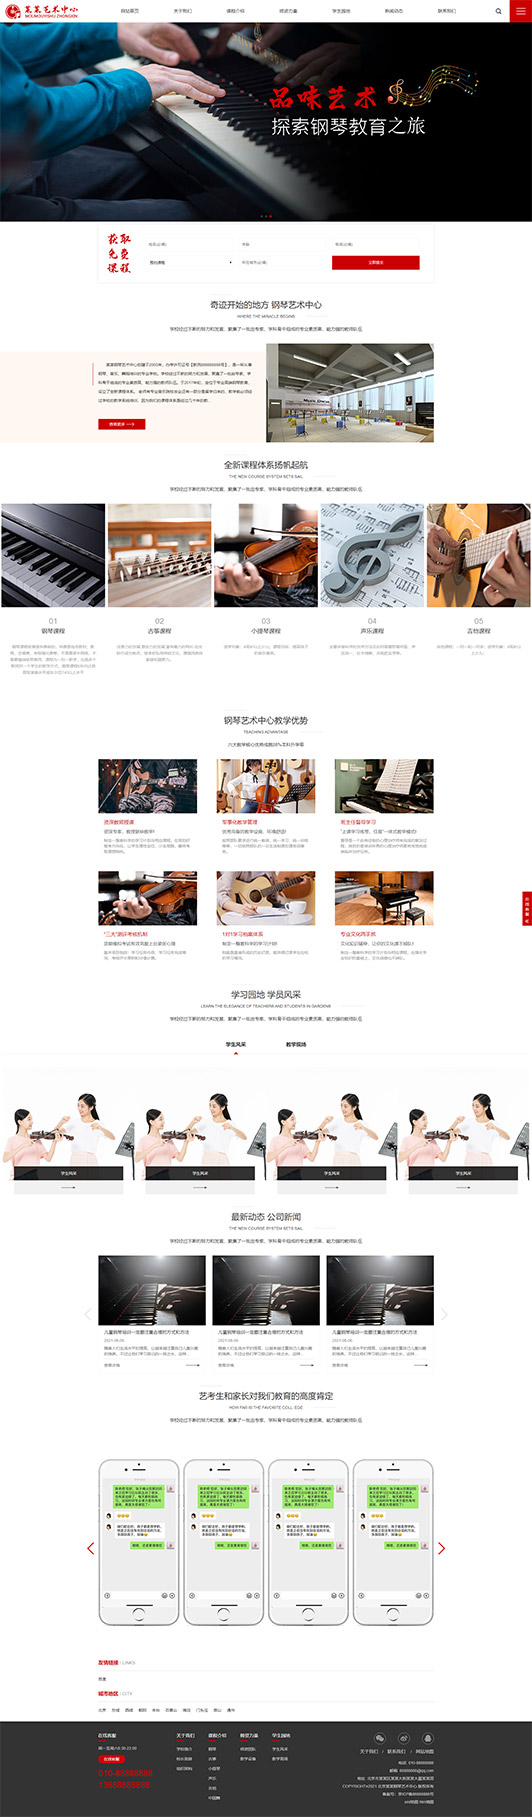 三亚钢琴艺术培训公司响应式企业网站